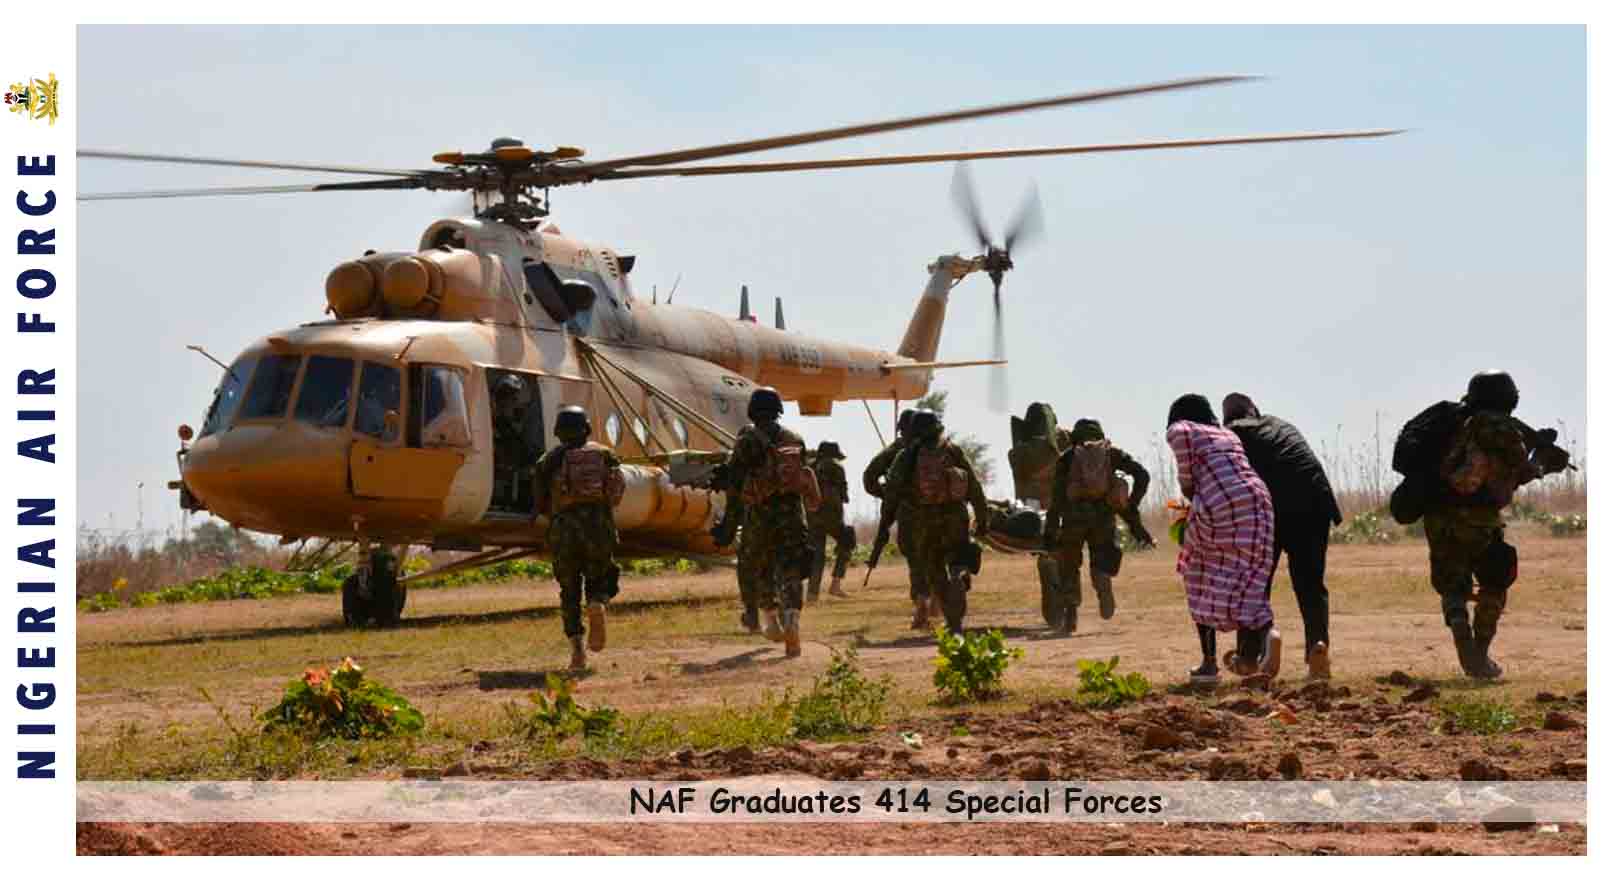 NAF Graduates 414 Special Forces